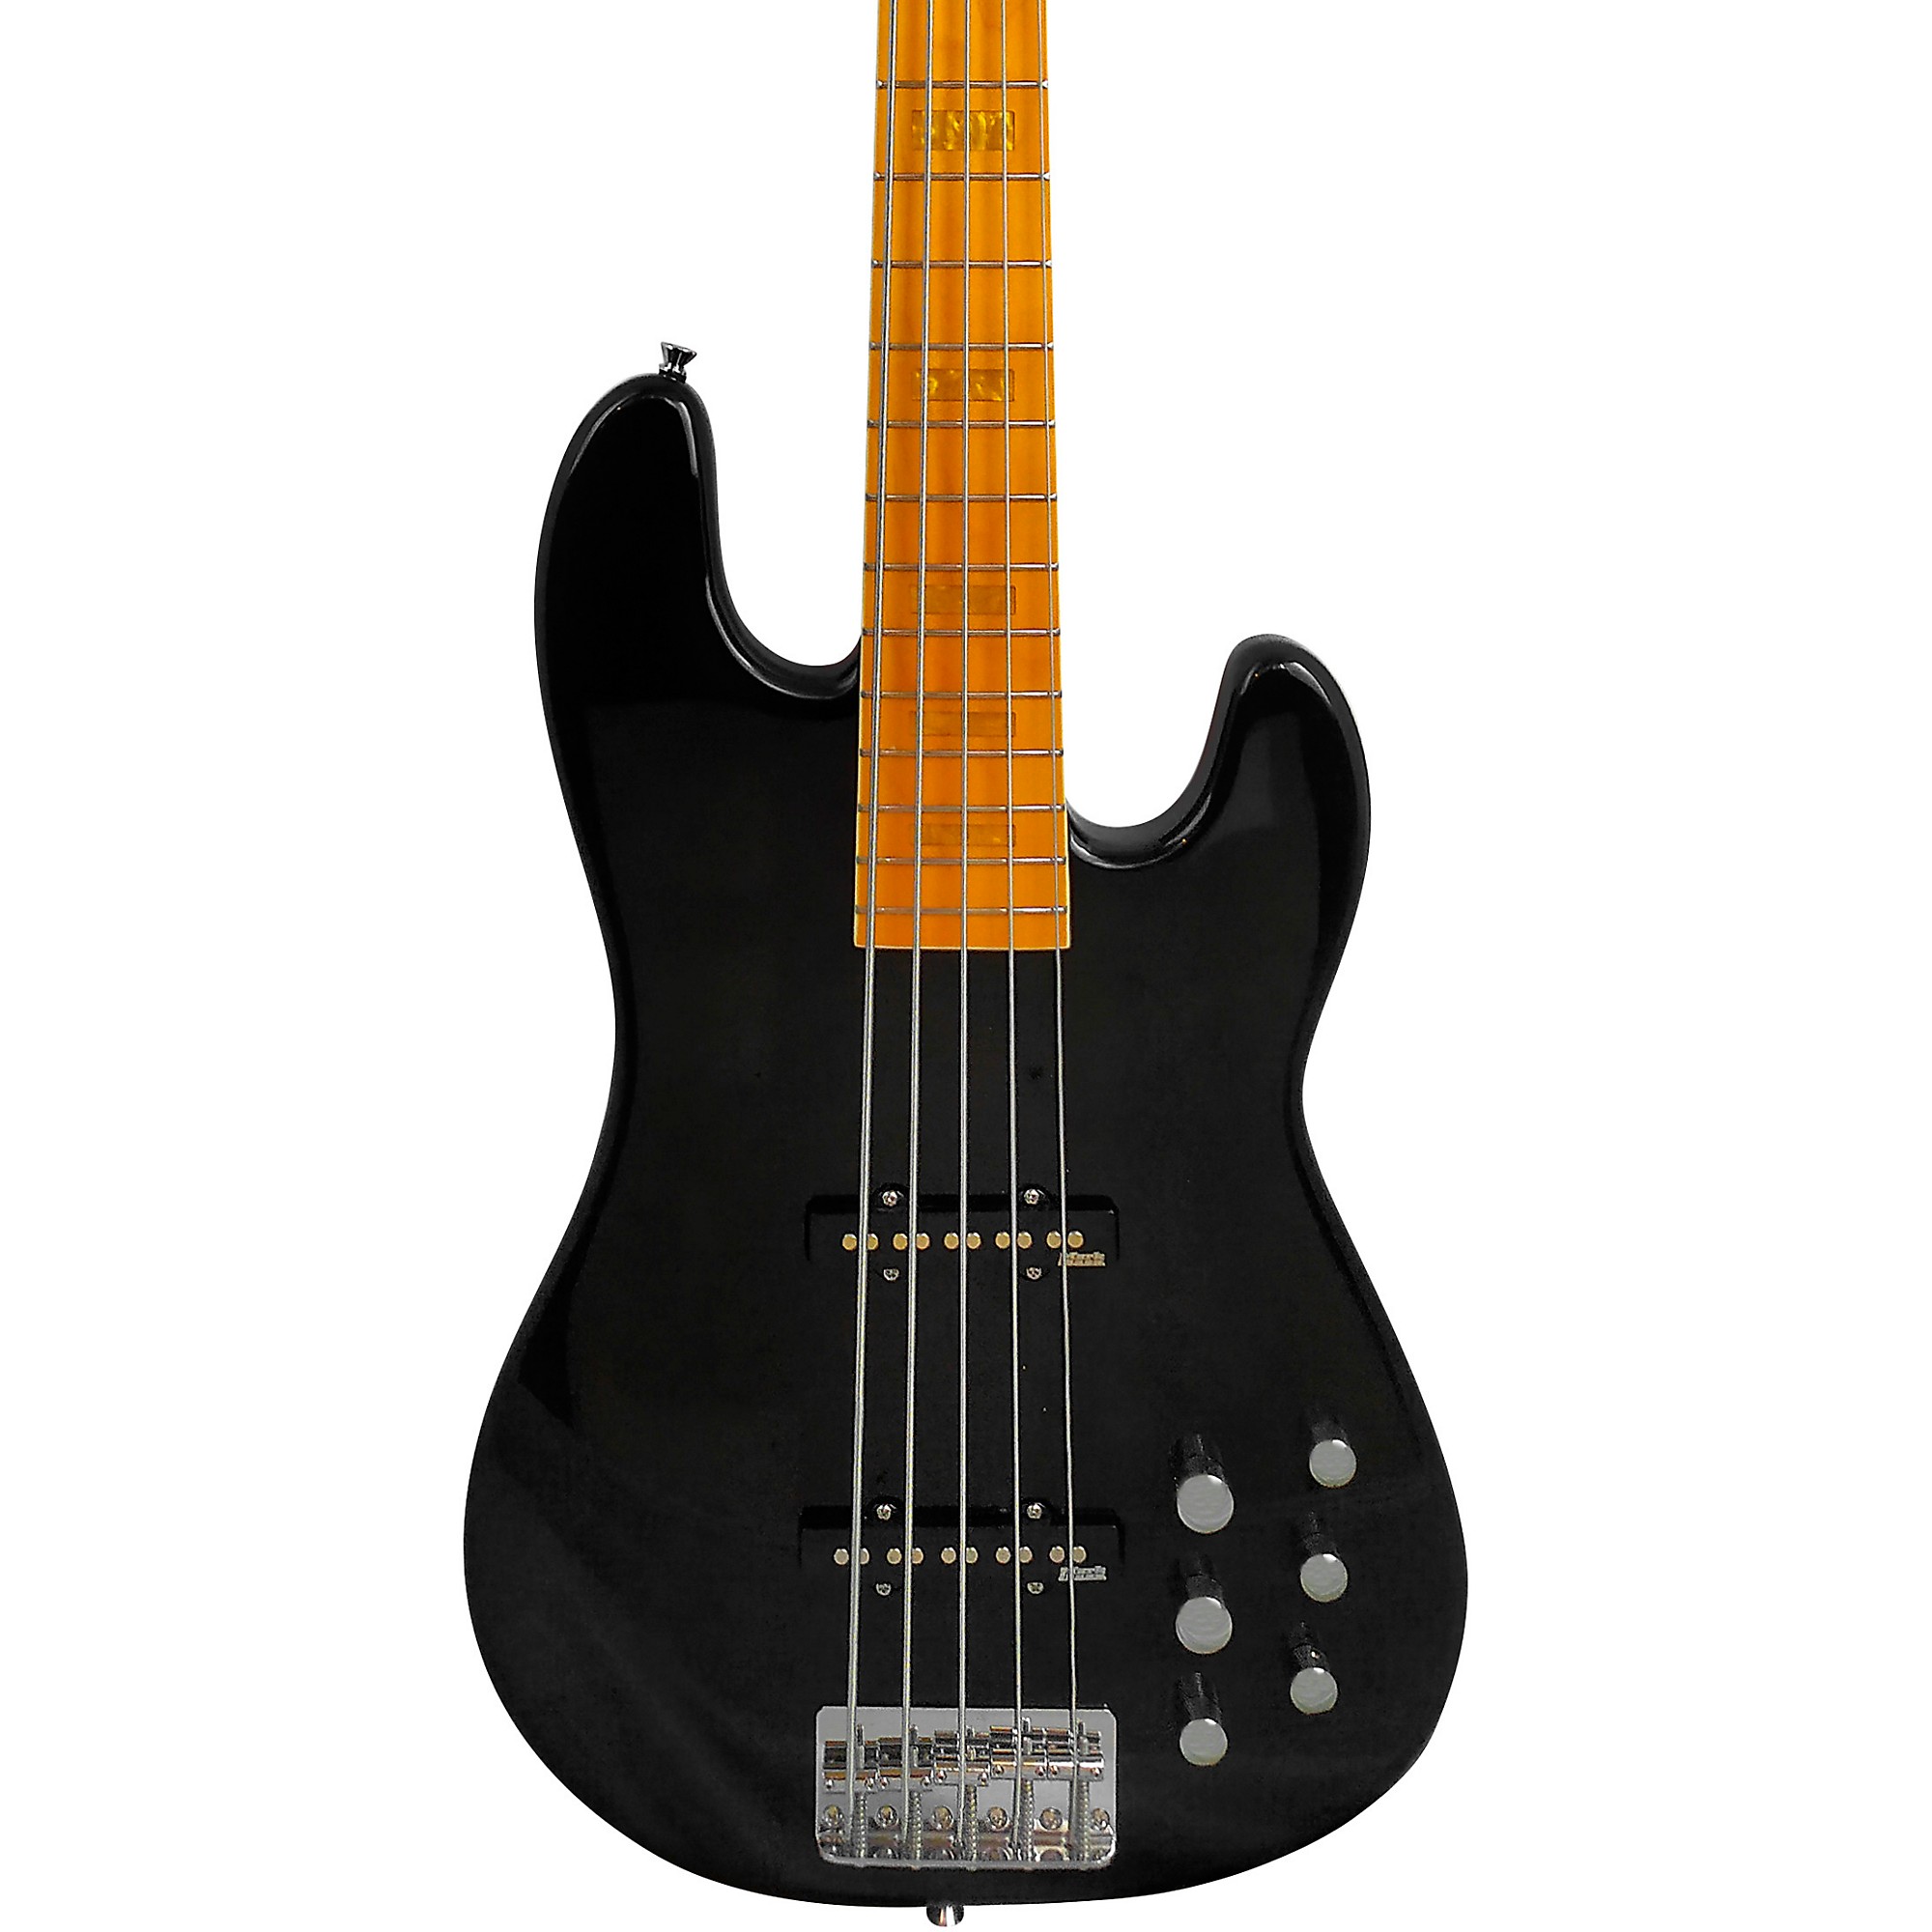 Markbass GV5 Gloxy Val MP 5-струнная электрическая бас-гитара, черная markbass gv5 gloxy val mp 5 струнная электрическая бас гитара черная